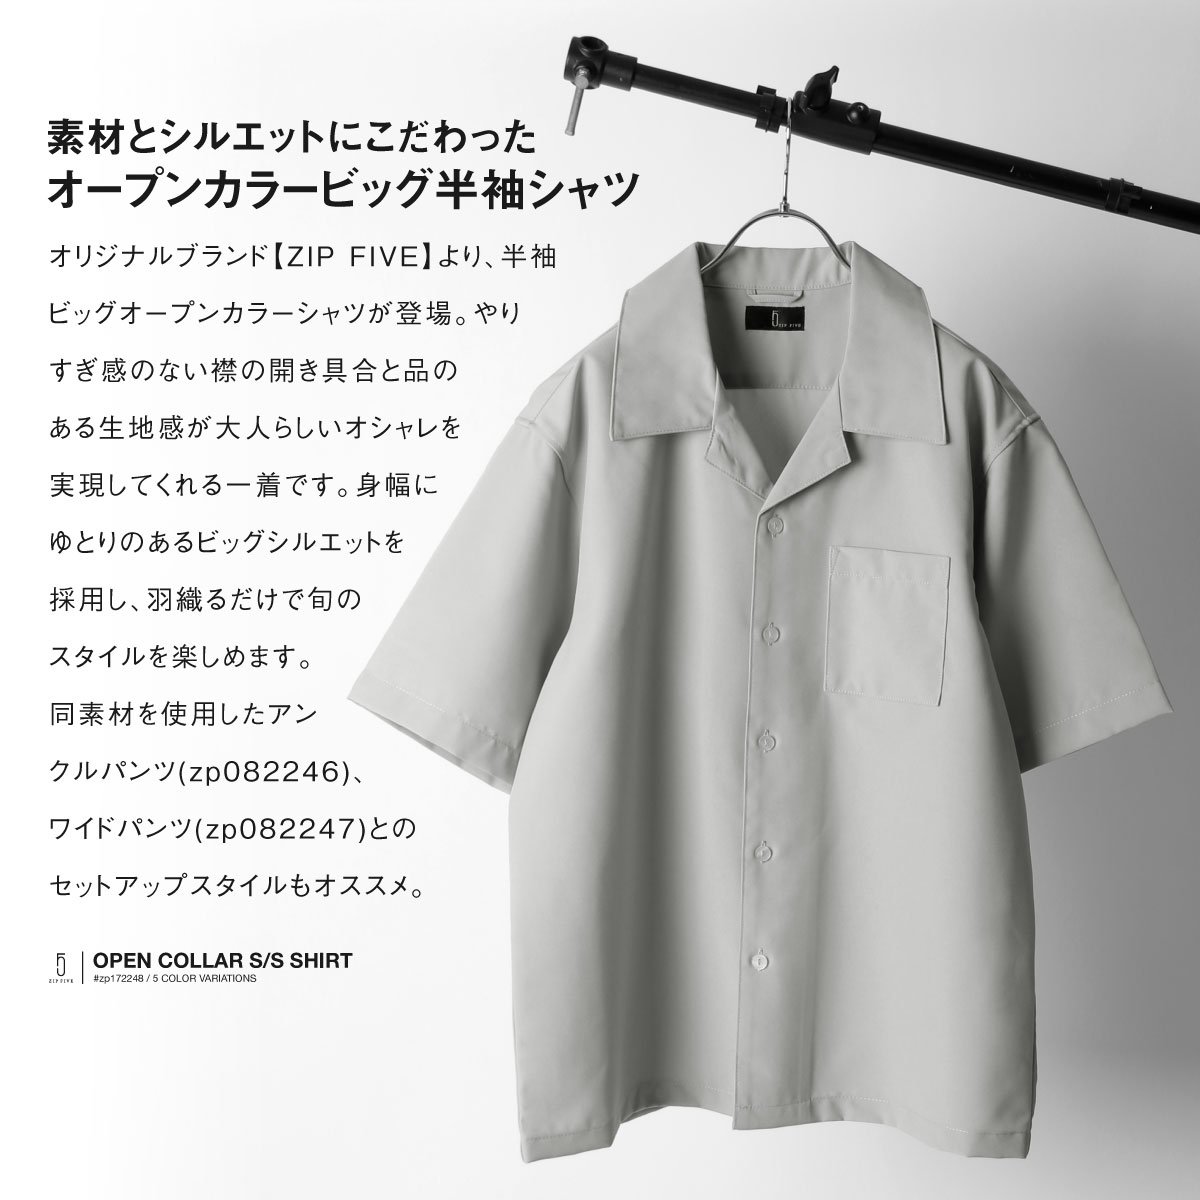 ポリトロリラックス半袖ビッグシルエットオープンカラーシャツ開襟シャツ【セットアップ可能】